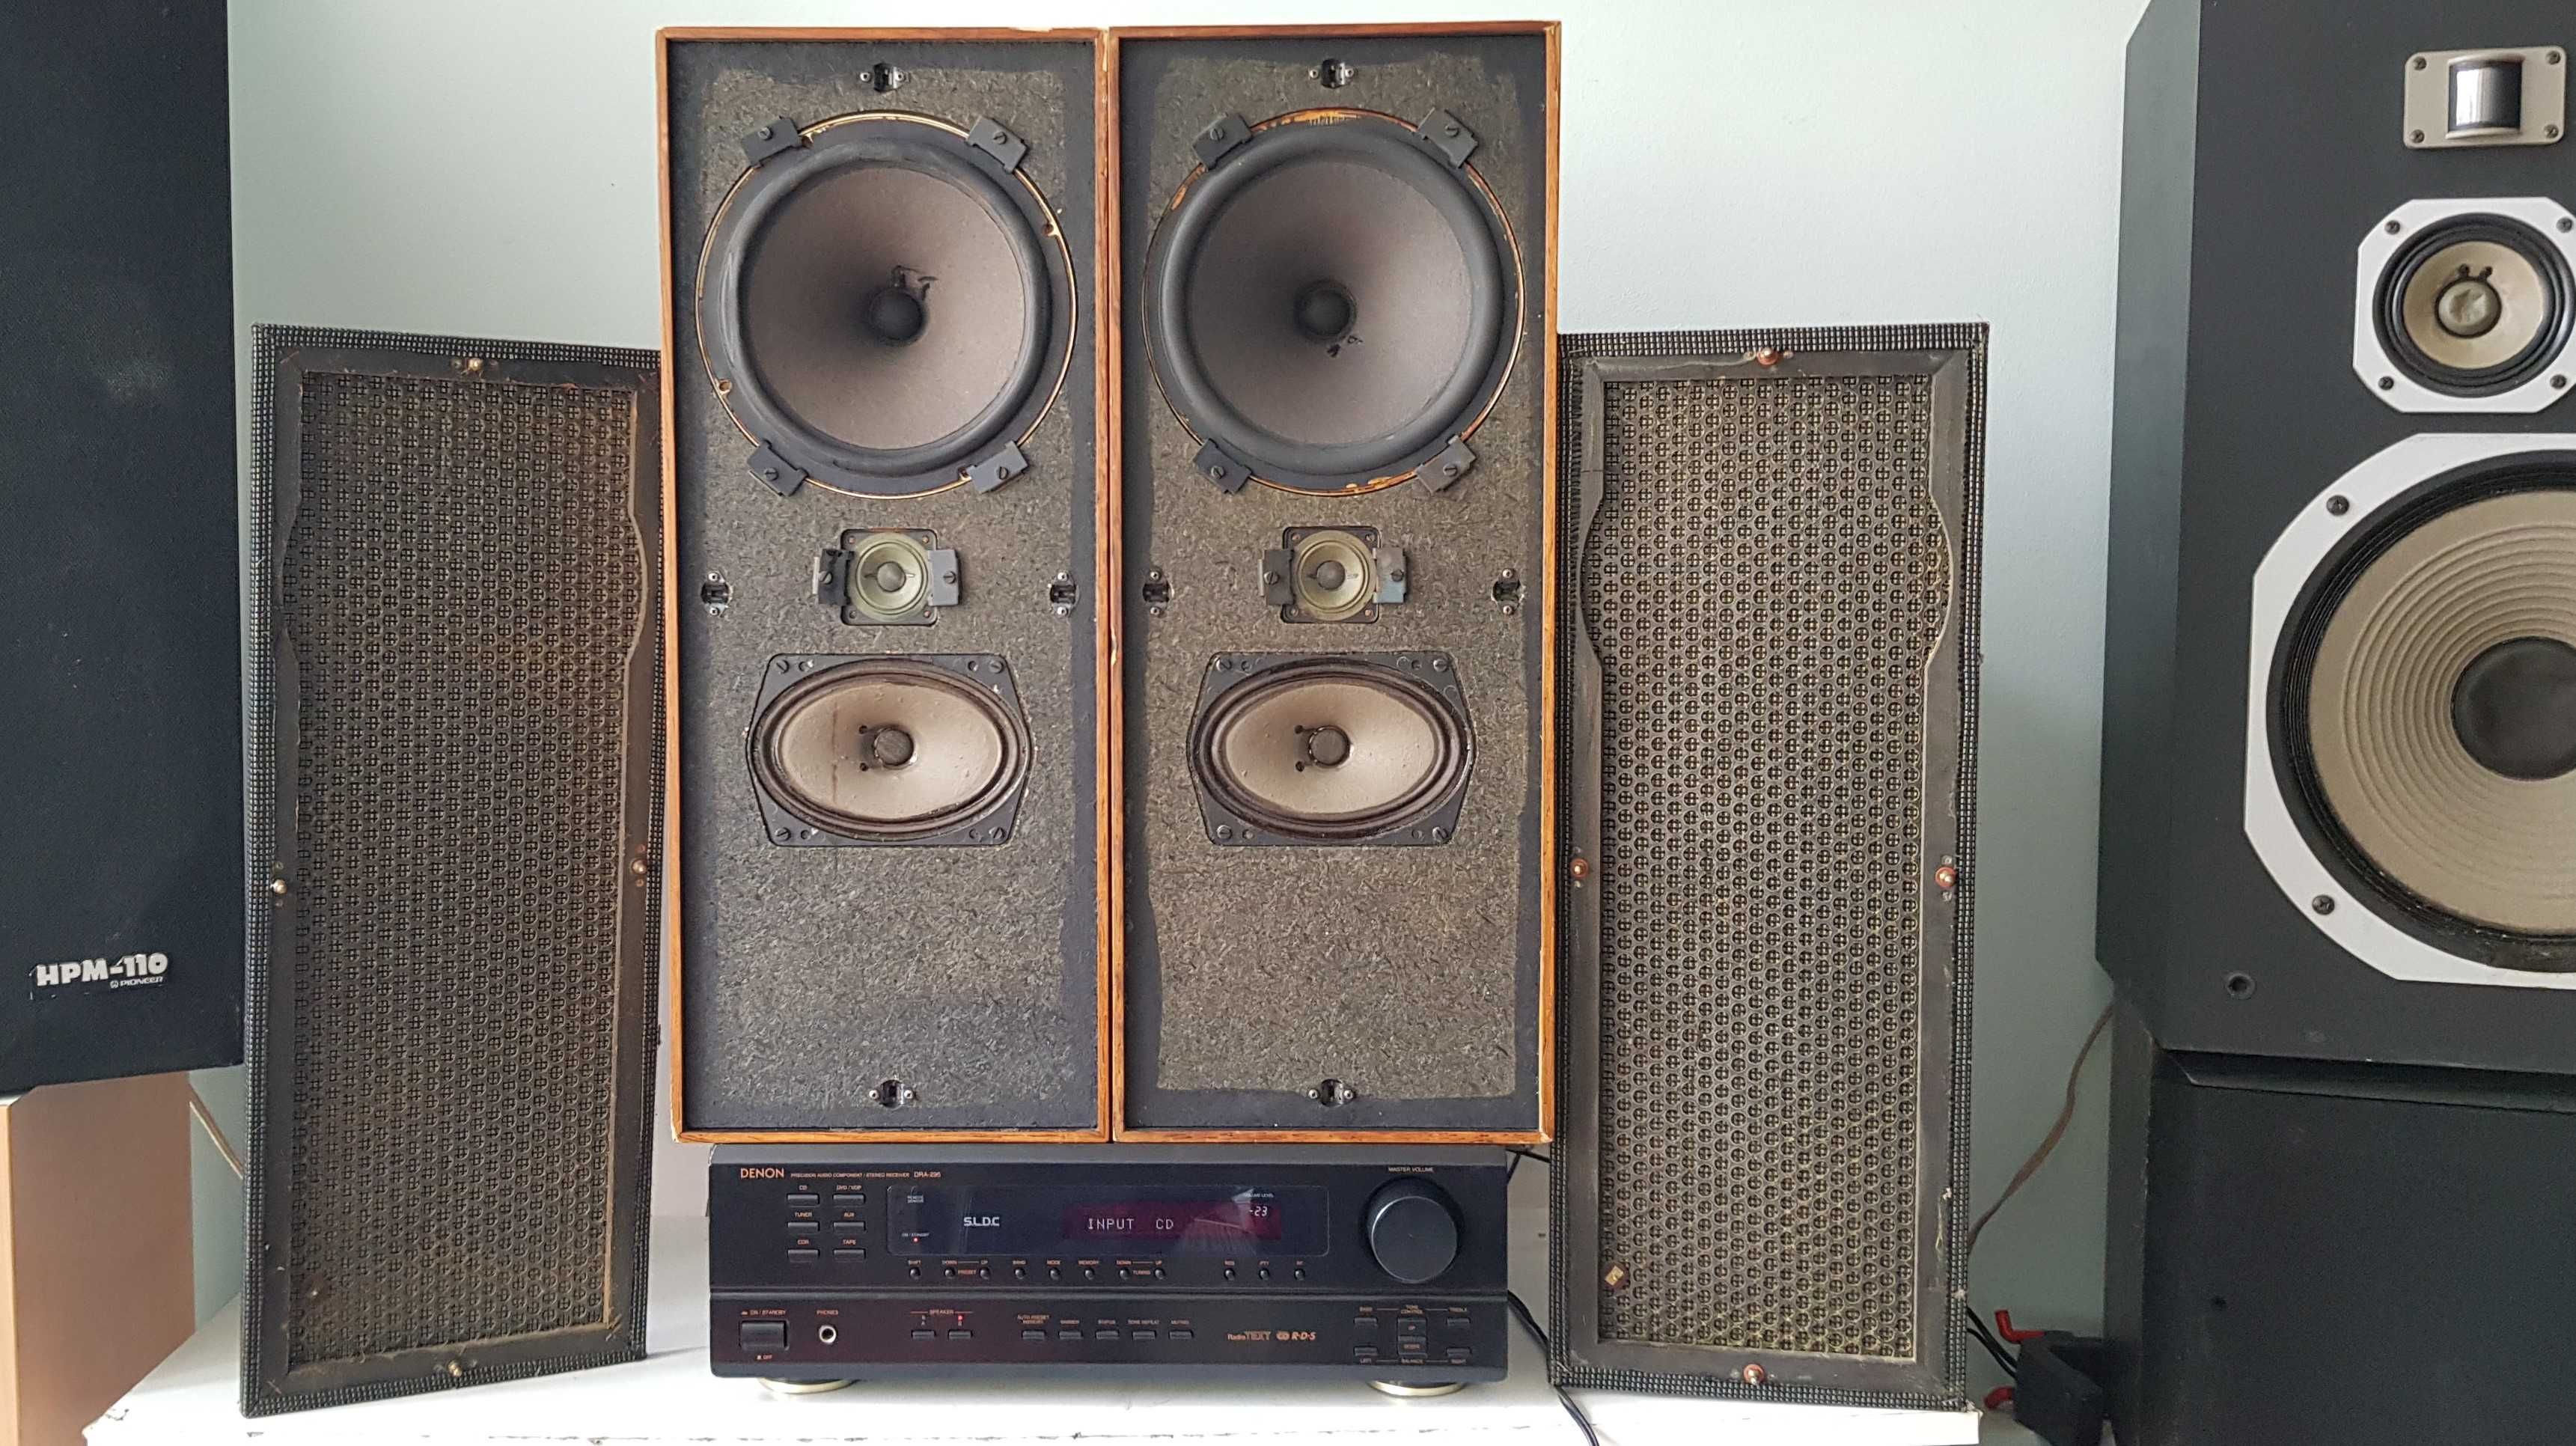 Muzica la Beovox 2400 audiophile 3 cai vintage rare si bune filme arta